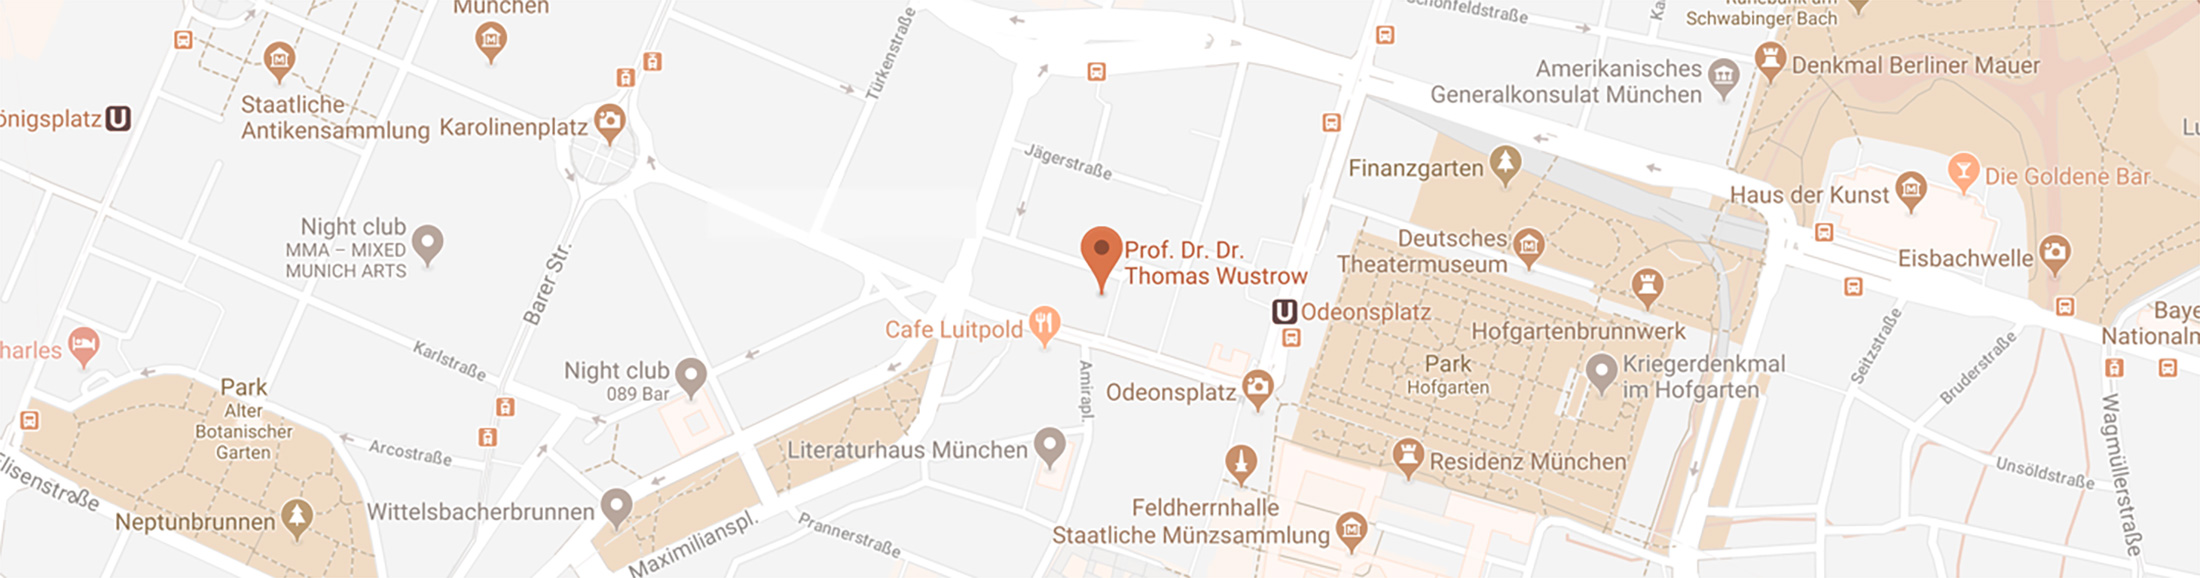 Map View 2200px - Allergie - Ekzemprophylaxe - HNO München